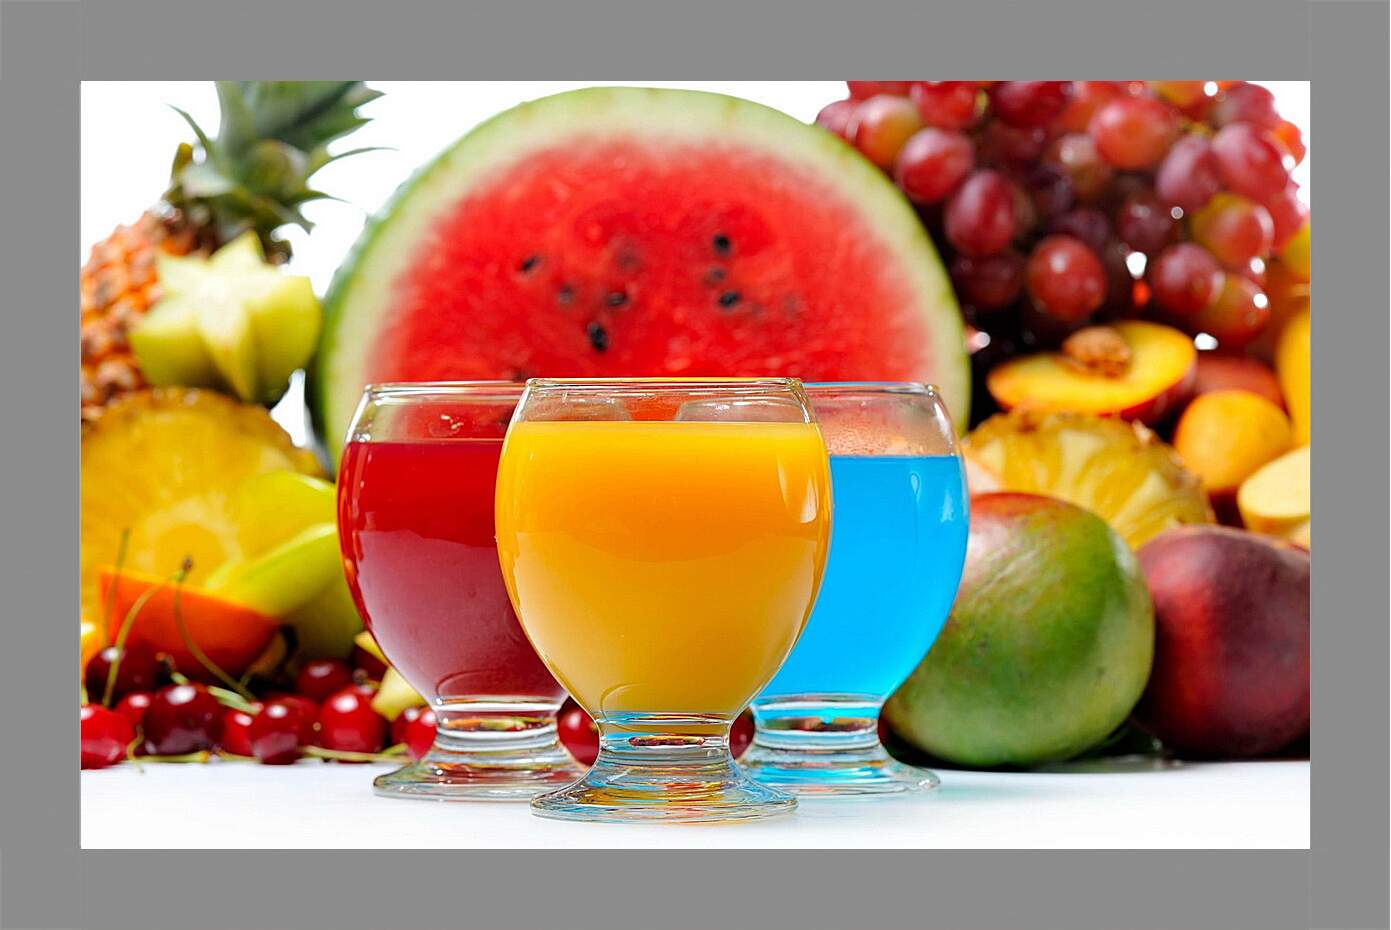 Картина в раме - Три коктейля, ягоды и фрукты